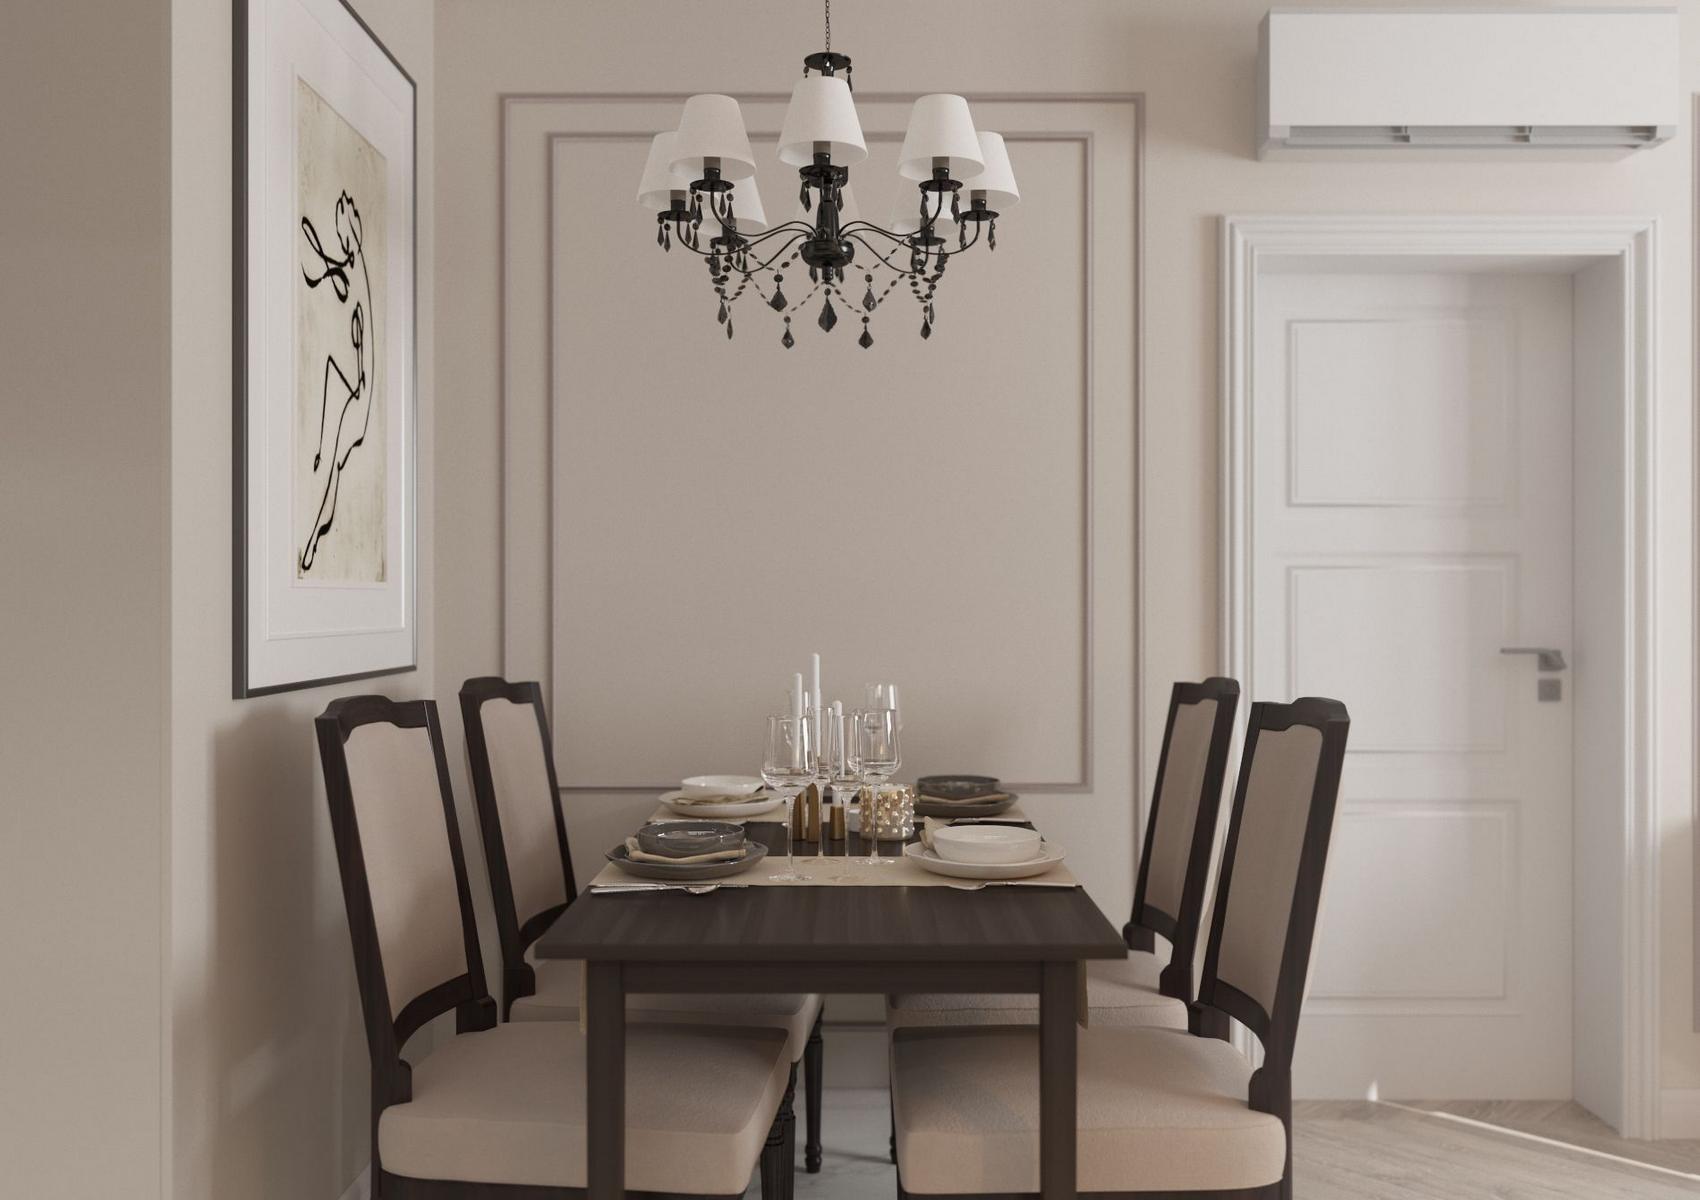 Phòng ăn sử dụng gam màu be đậm cho cảm giác thanh lịch từ bức tường đến bộ ghế ăn. Chiếc đèn chùm kiểu cổ điển kết hợp với bàn ăn được bày biện tinh tế vô cùng.